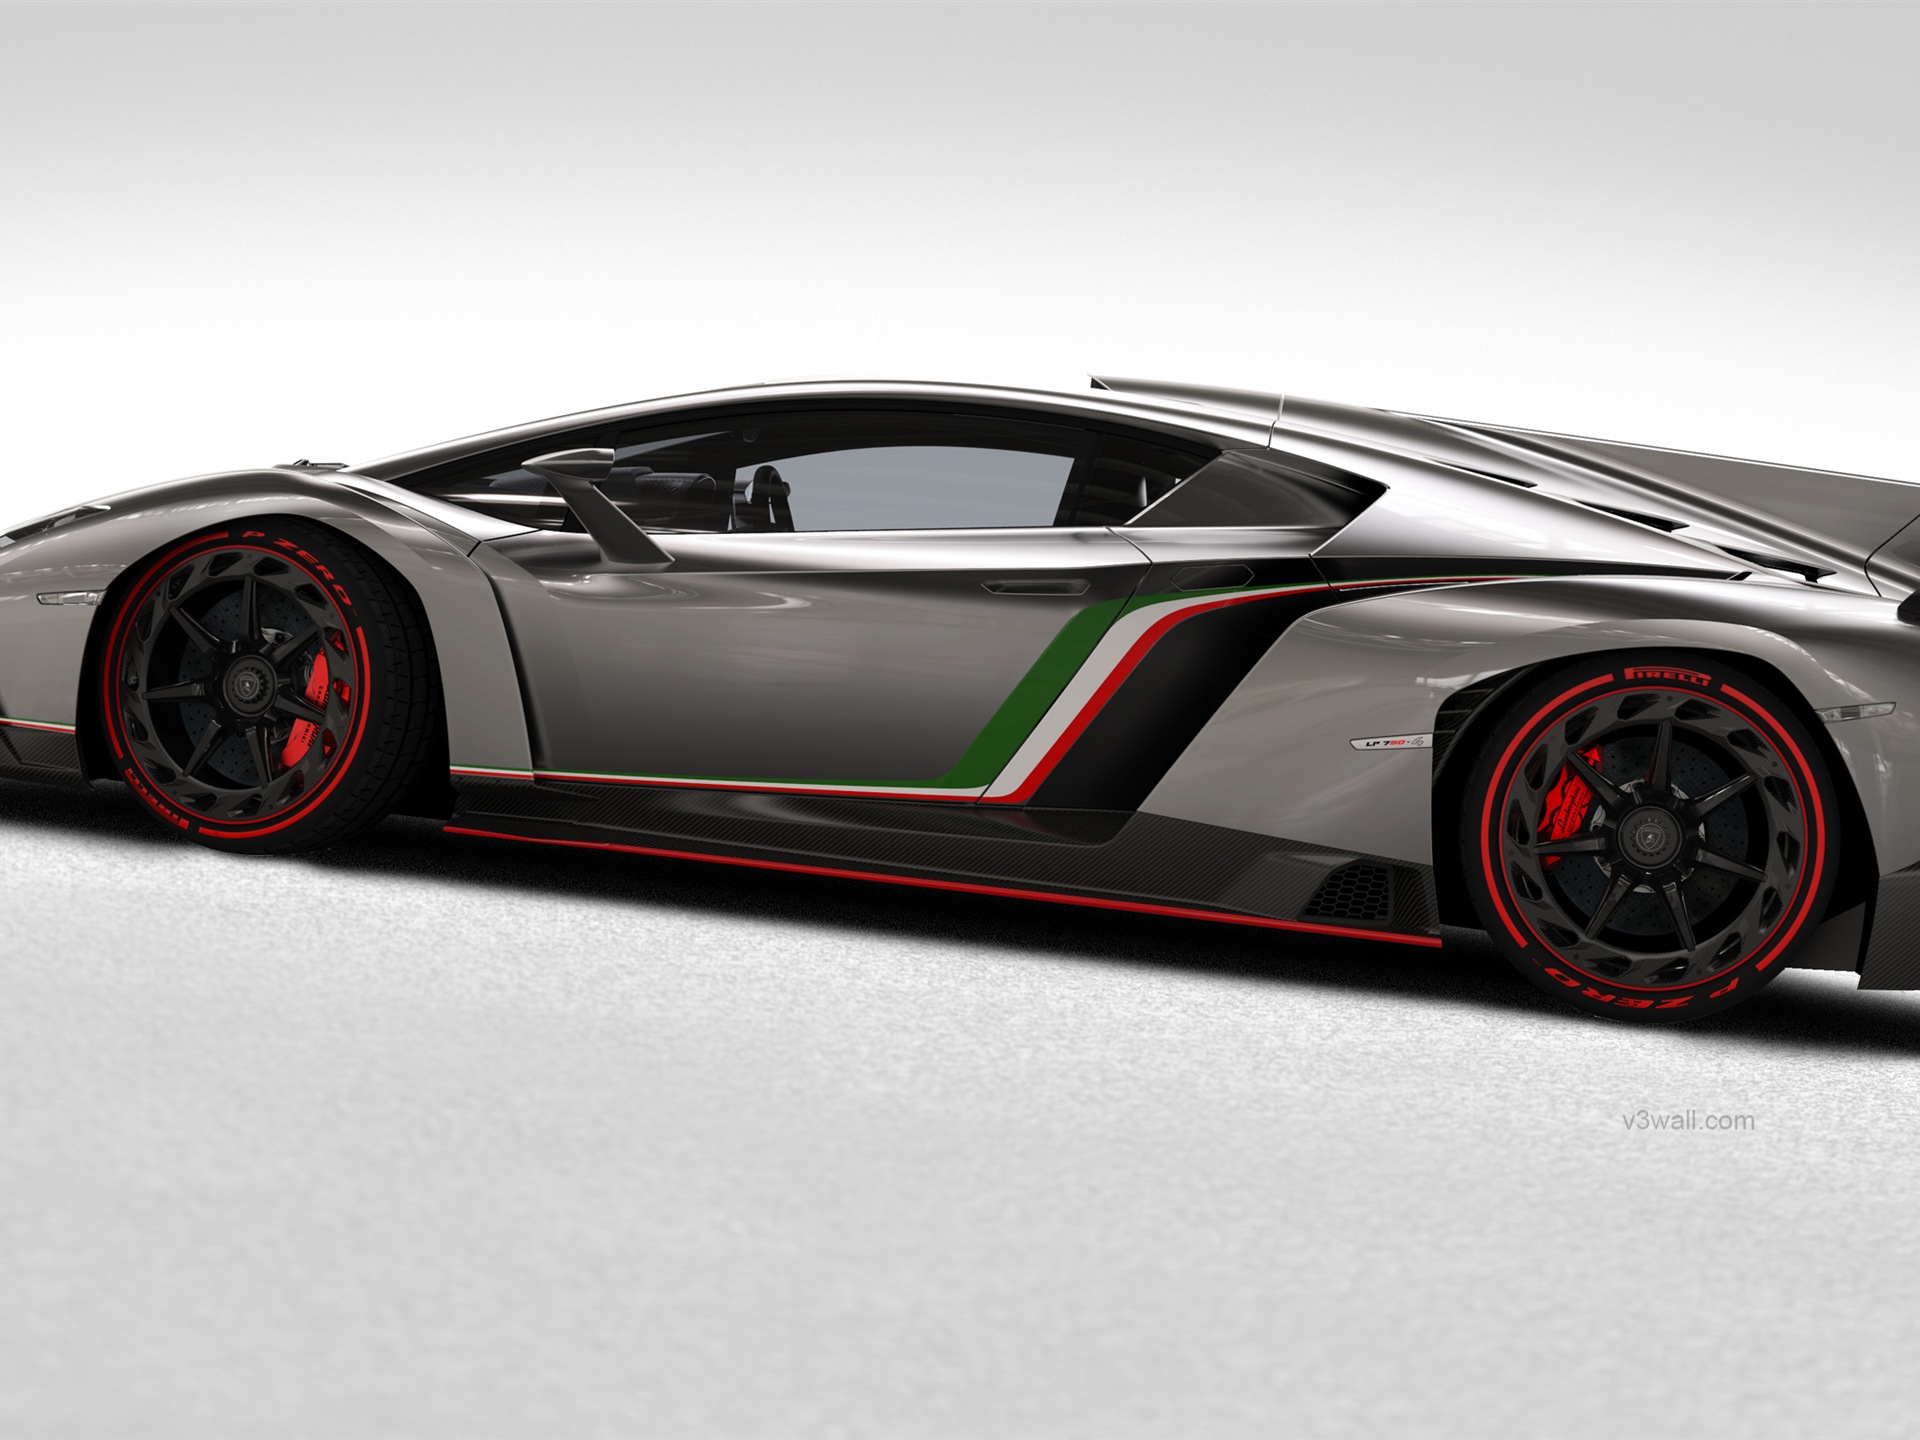 2013 Lamborghini Veneno 蘭博基尼Veneno豪華超級跑車高清壁紙 #3 - 1920x1440